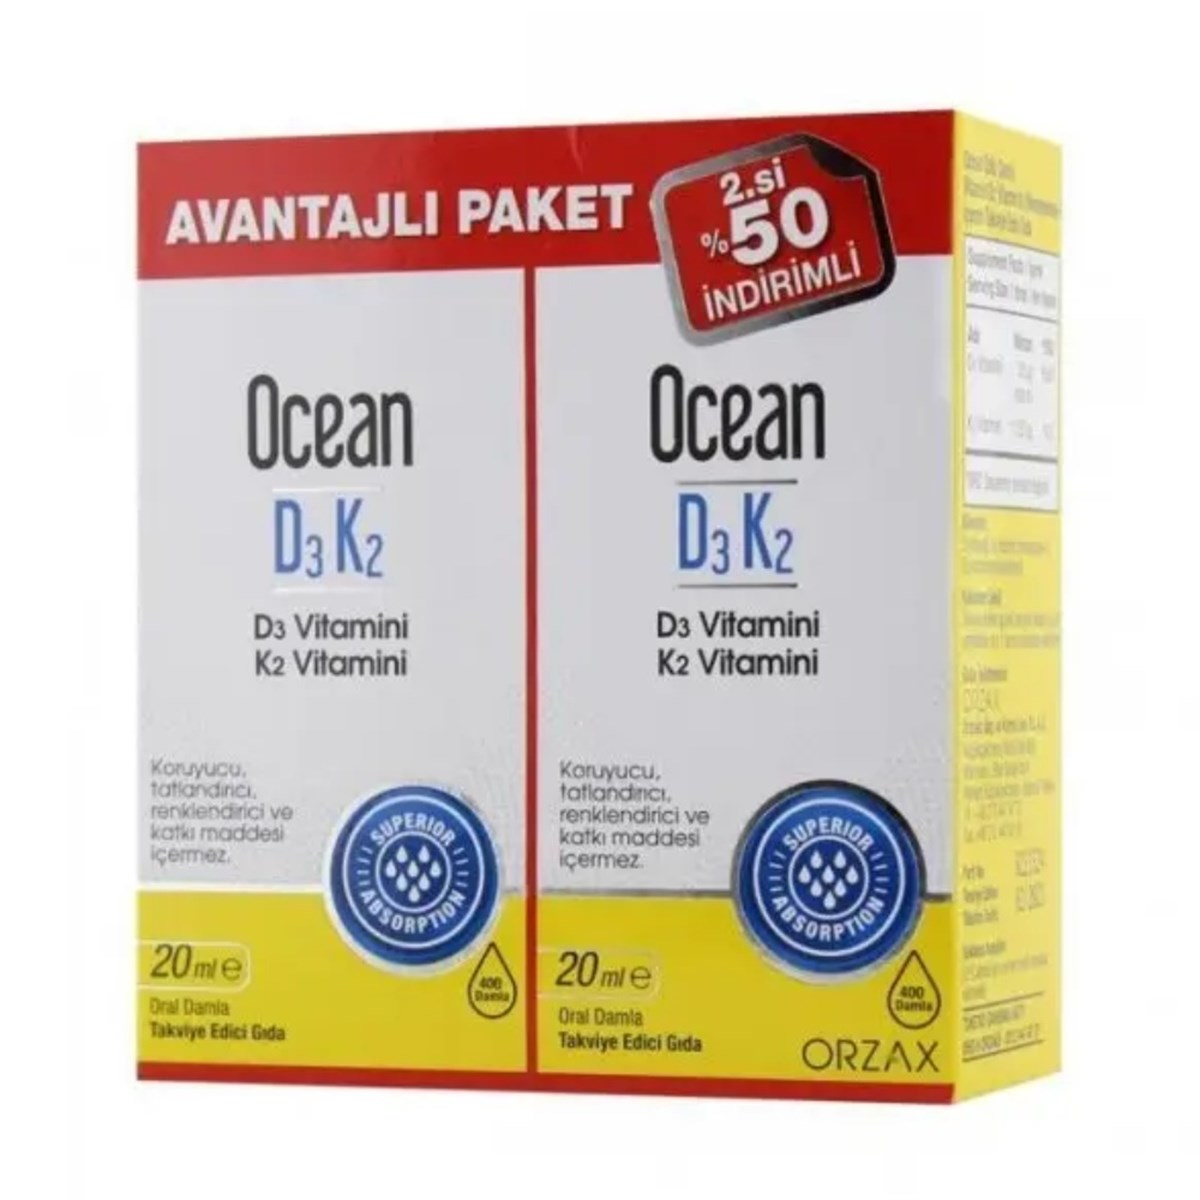 Ocean D3K2 Oral Damla Avantajlı Paket 20+20 ml - İkincisi %50 İndirimli